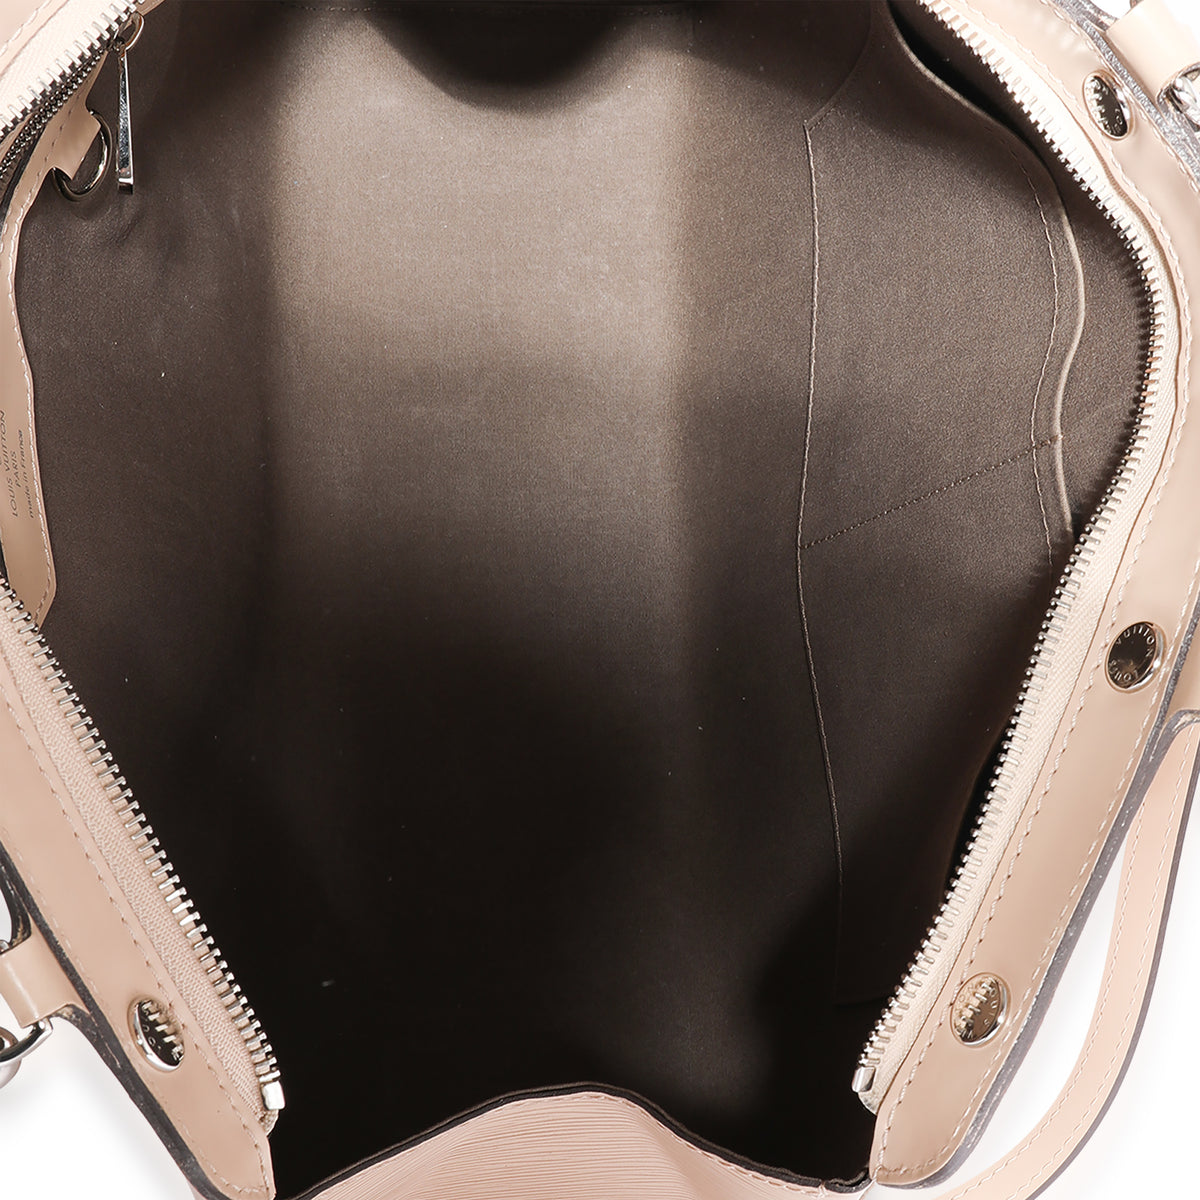 Louis Vuitton Dune (Neutral, Light Beige) Epi Leather Brea MM Bag